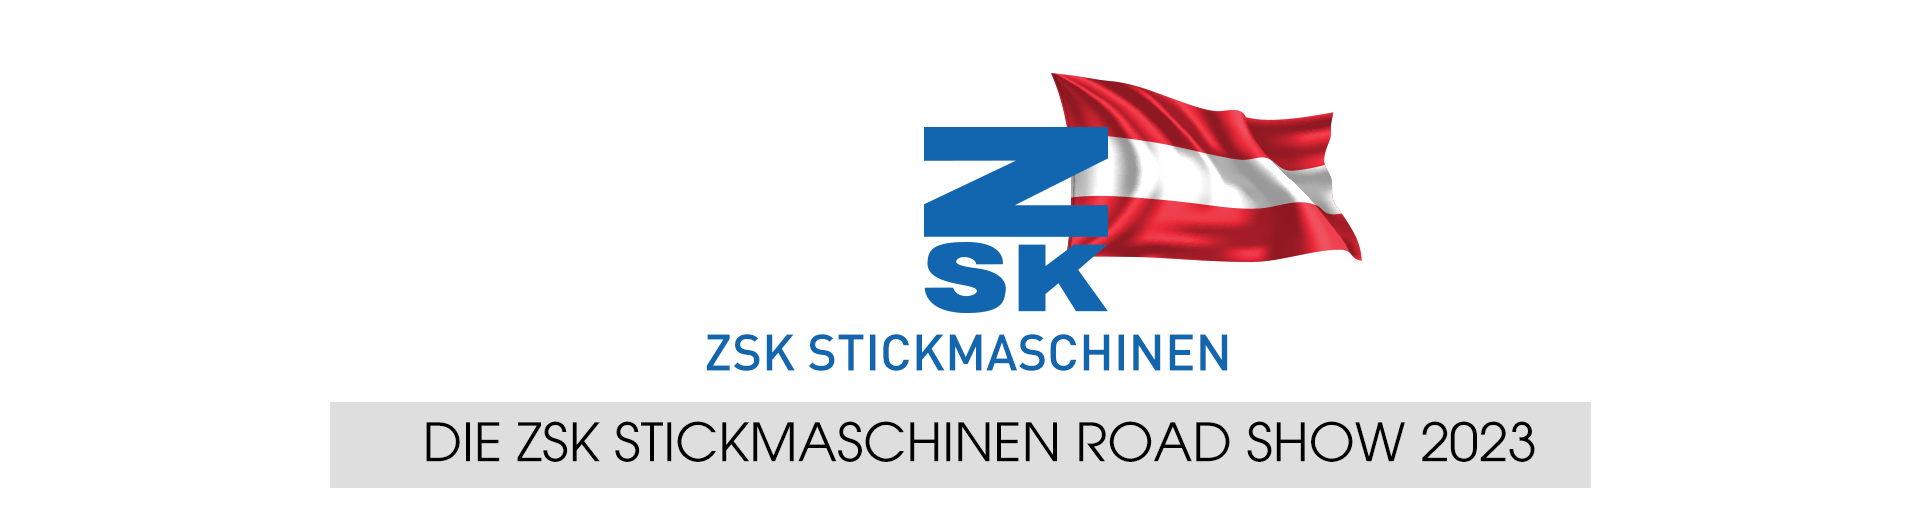 Road Show Österreich 2023 - ZSK STICKMASCHINEN